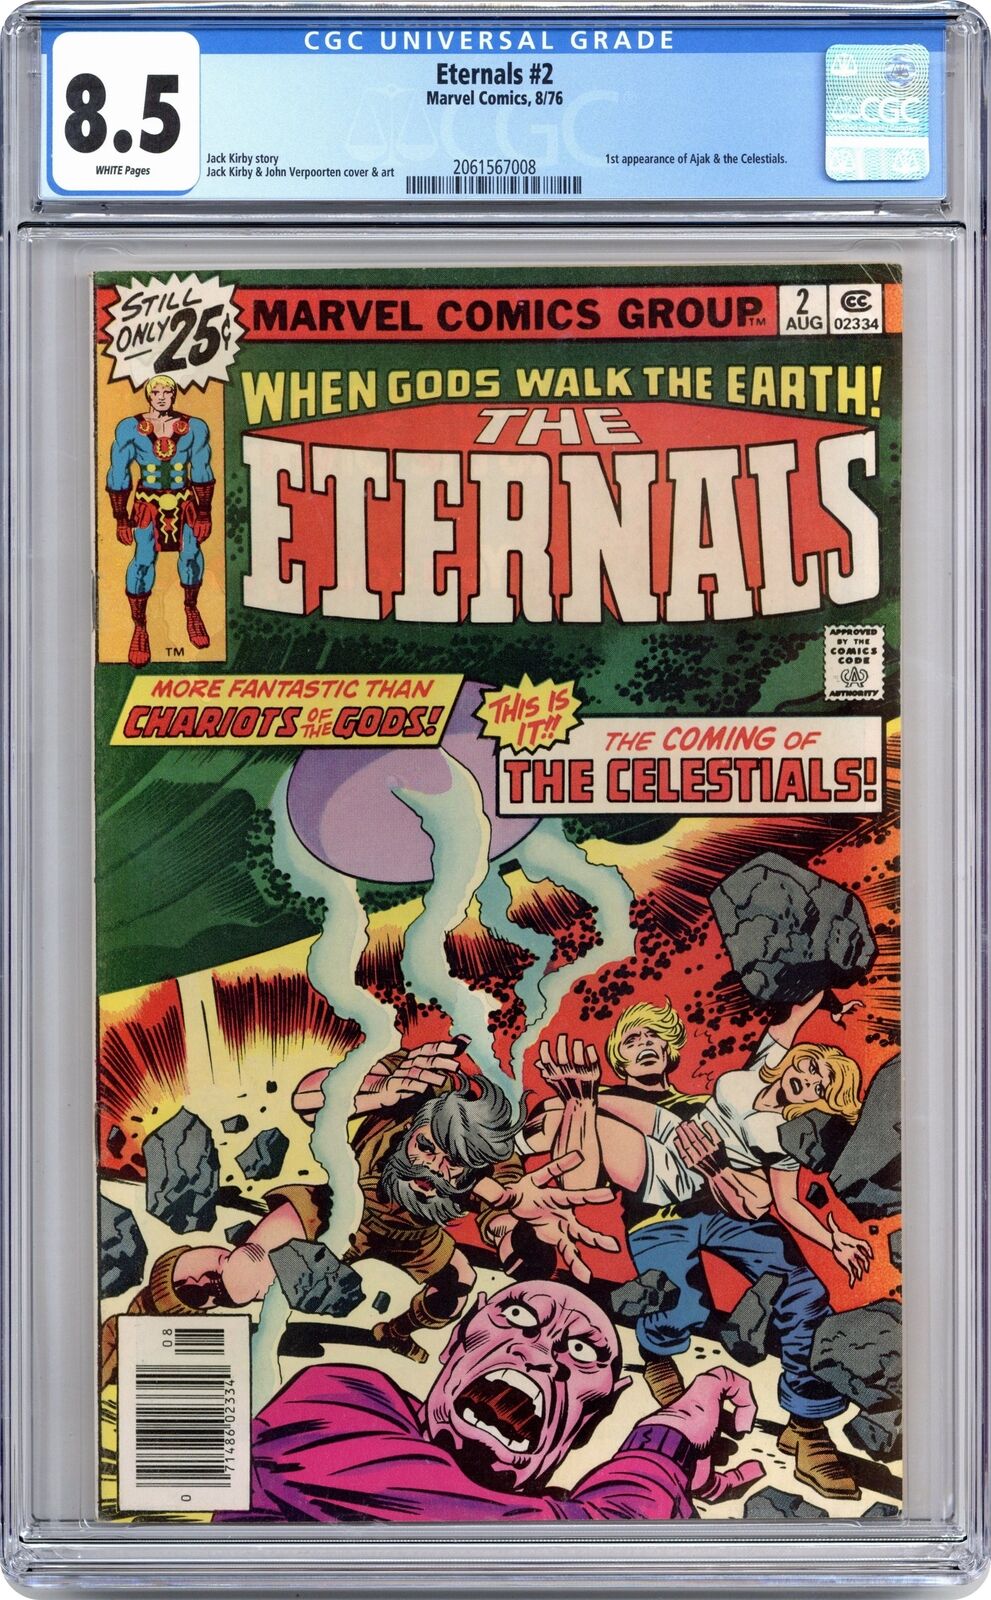 Eternals #2 CGC 8.5 1976 2061567008